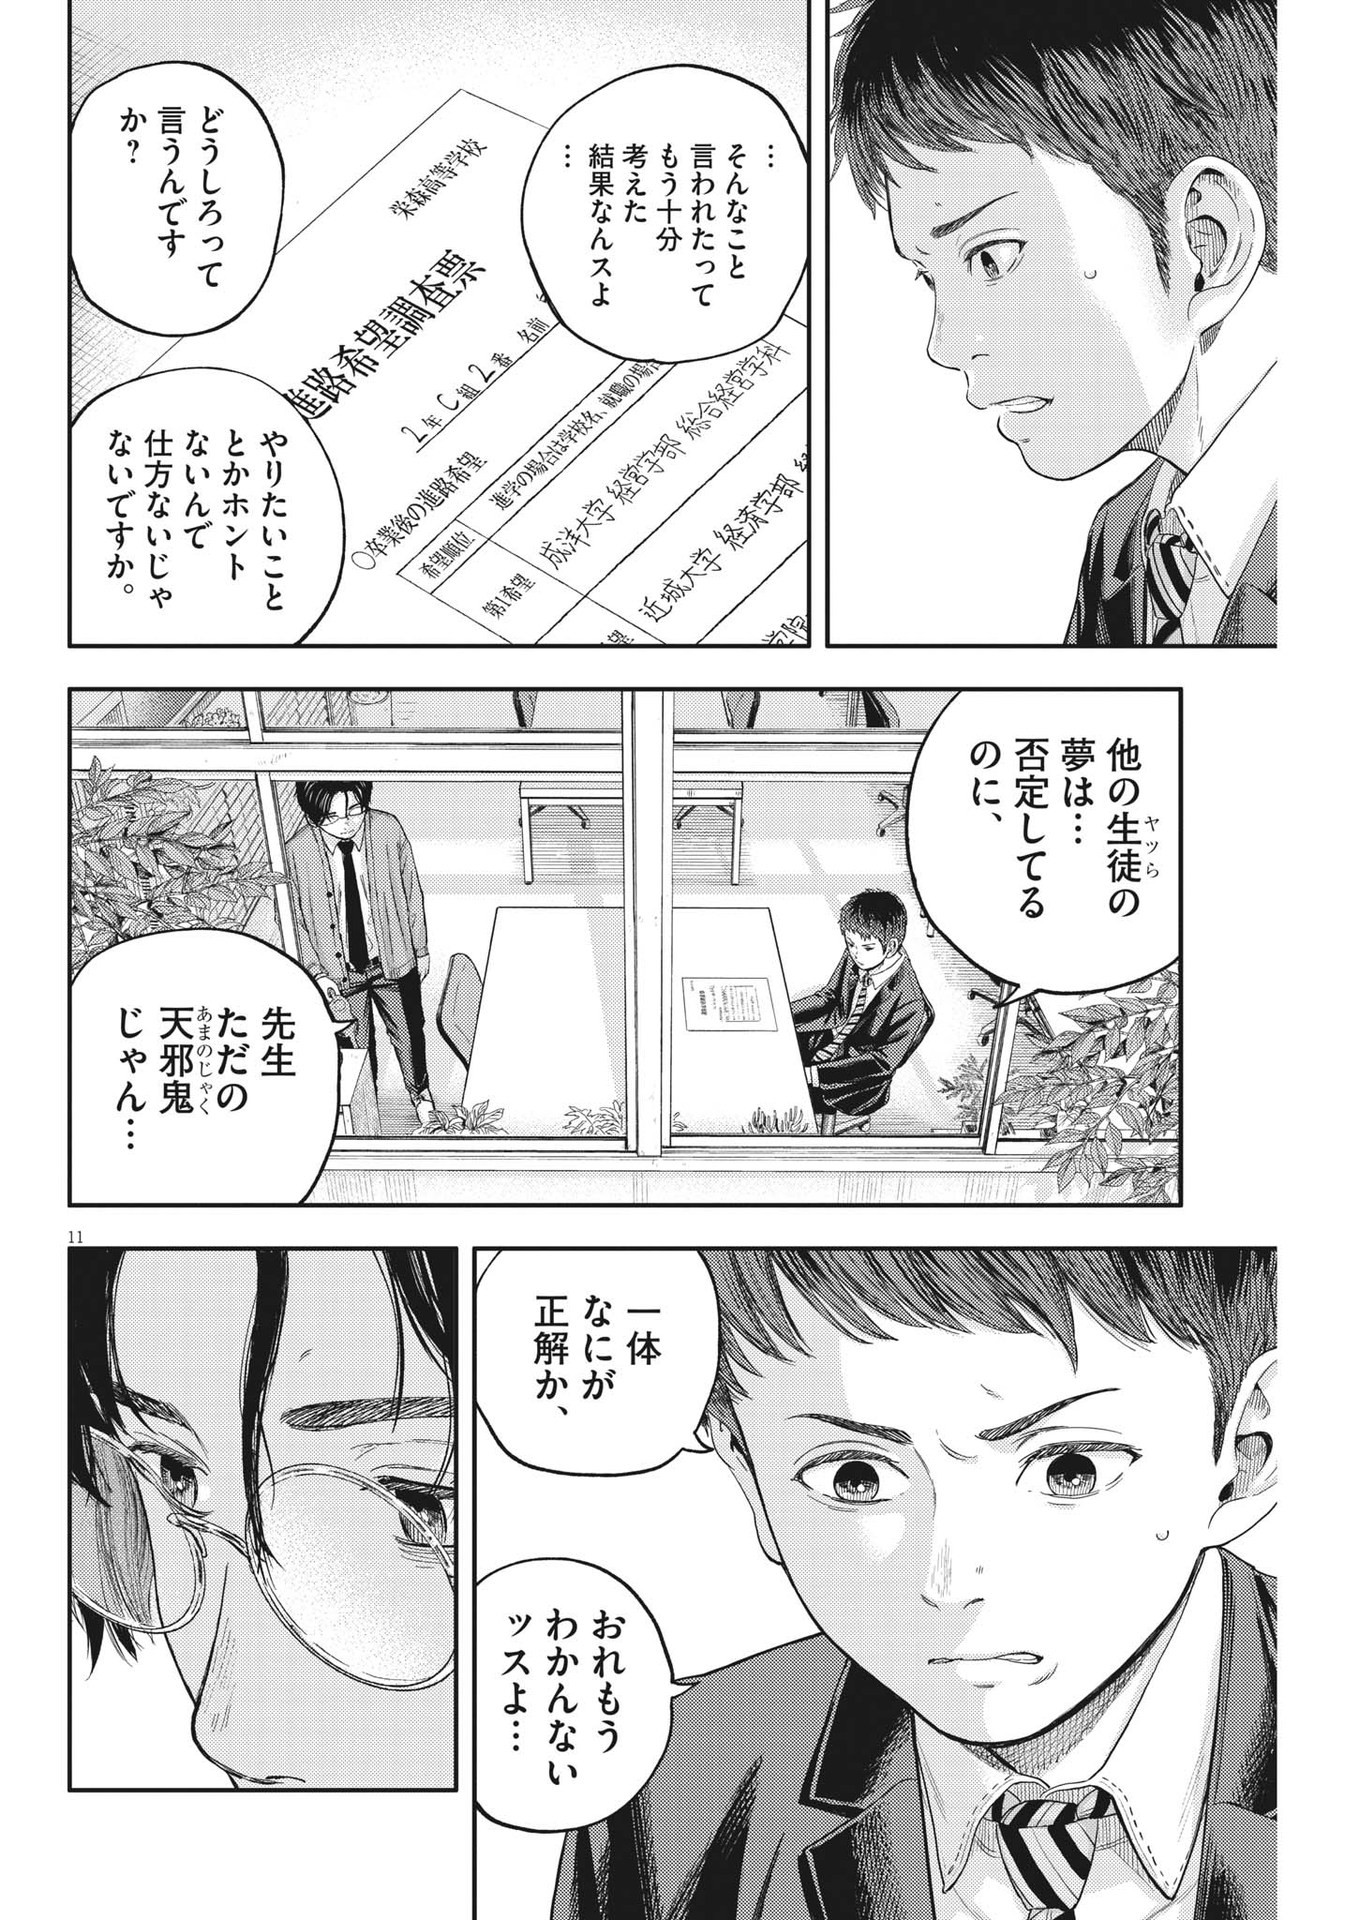 Yumenashi-sensei no Shinroshidou - Chapter 19 - Page 11